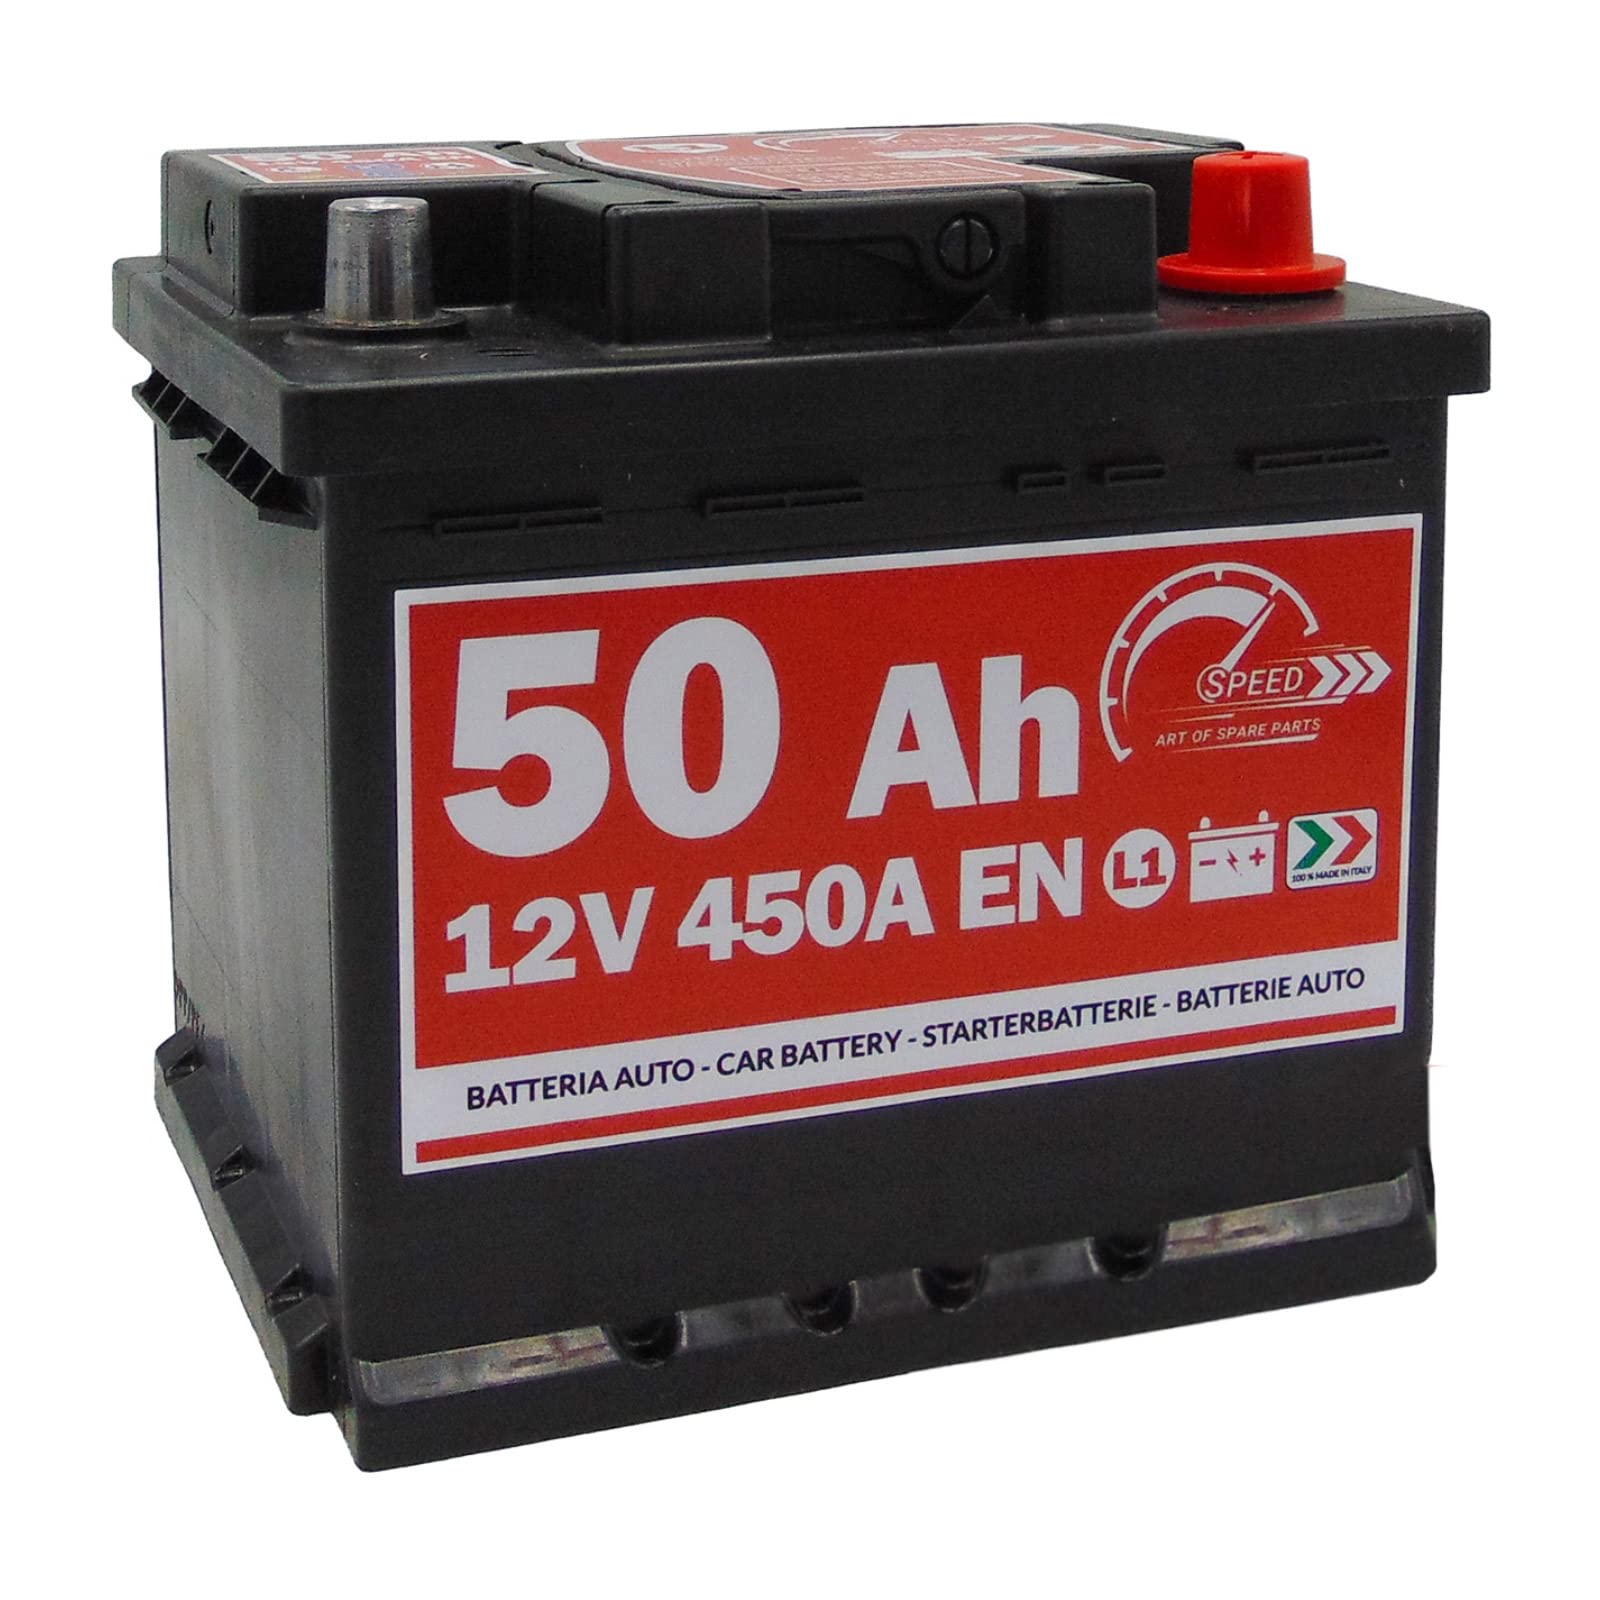 Autobatterie Speed L150-12V 50Ah 450A/EN - Starter 30% mehr Leistung,207 x175 x 190 mm von SMC